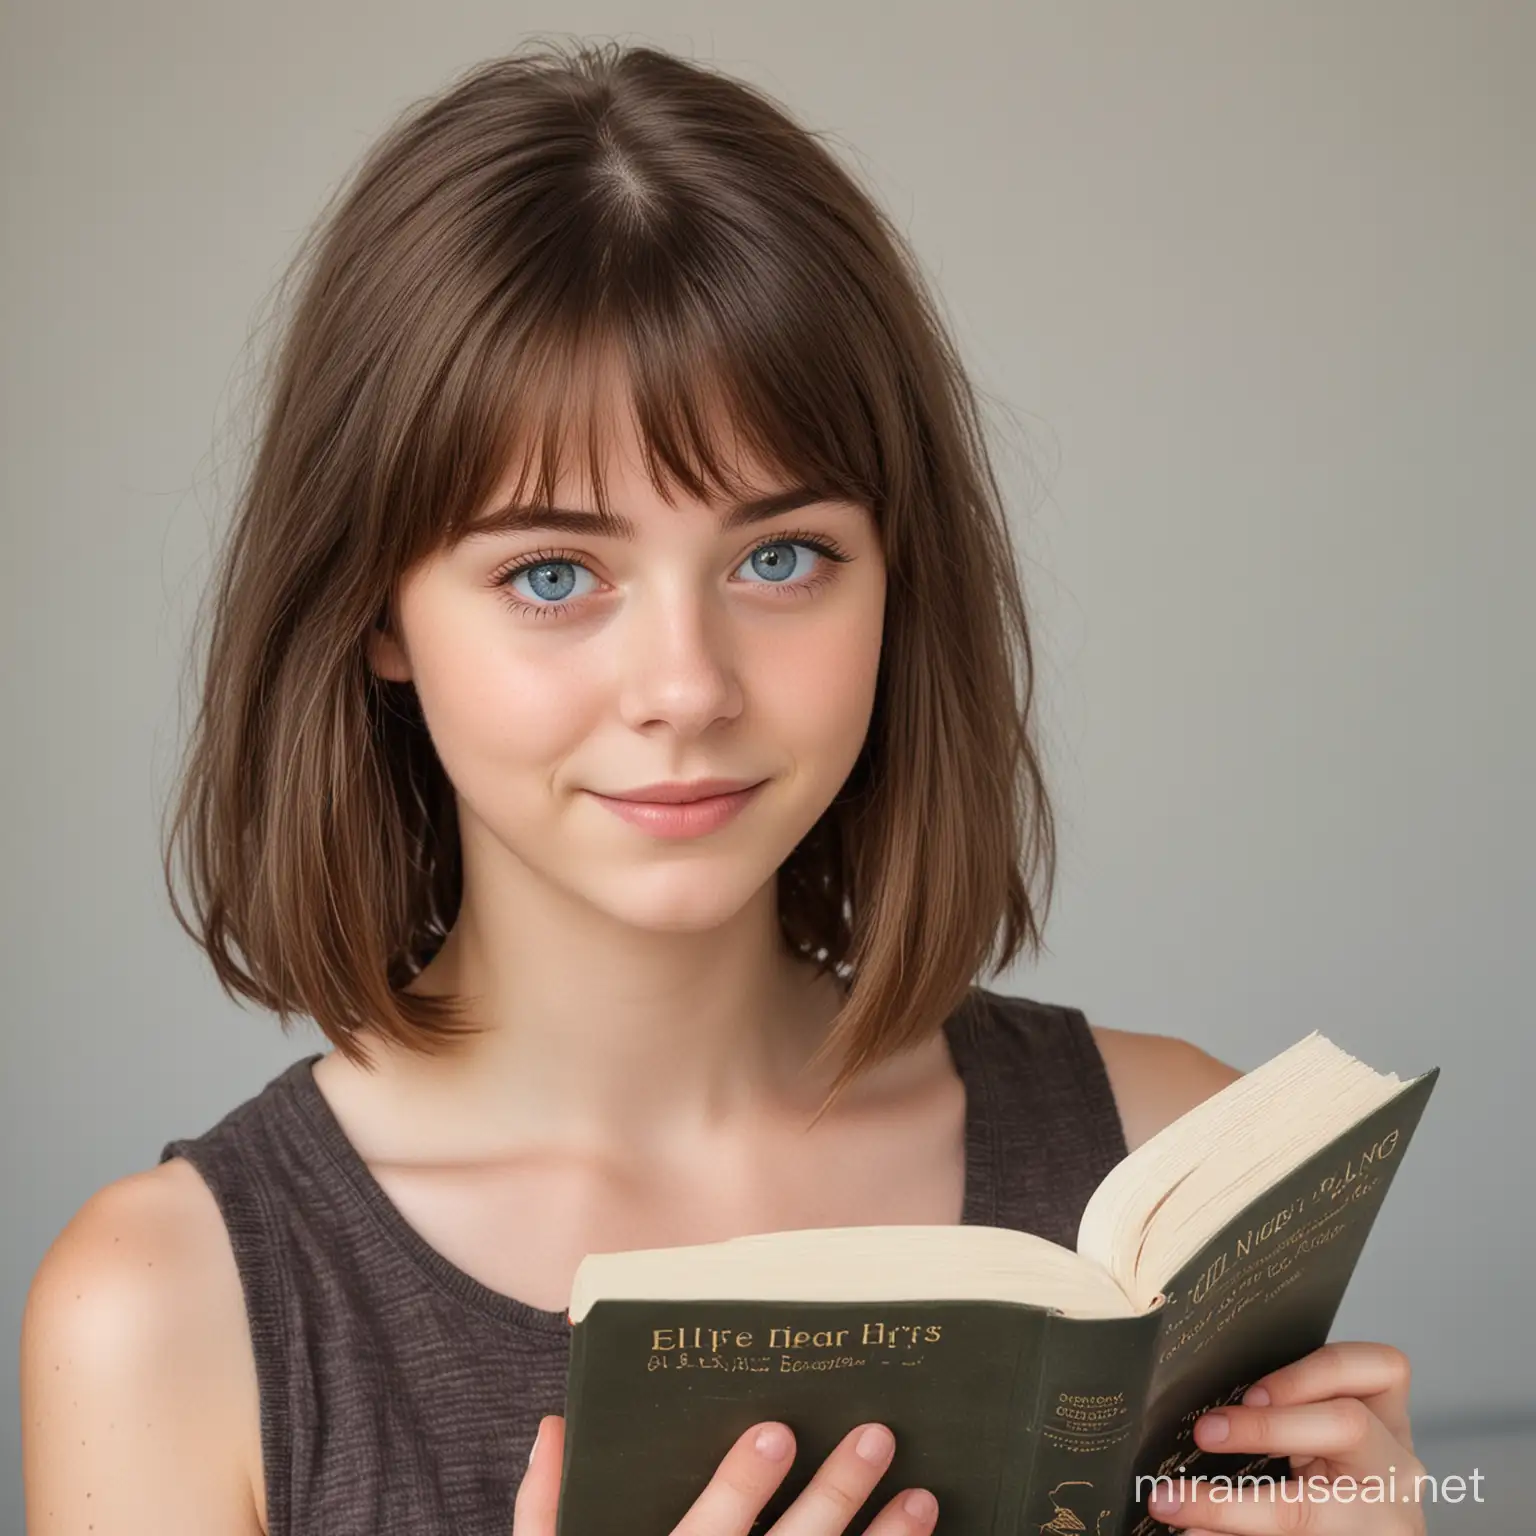 Kısa kahverengi saçlı, kahküllü, mavi gözlü, elinde kitap olan,  16 yaşında bir kız.